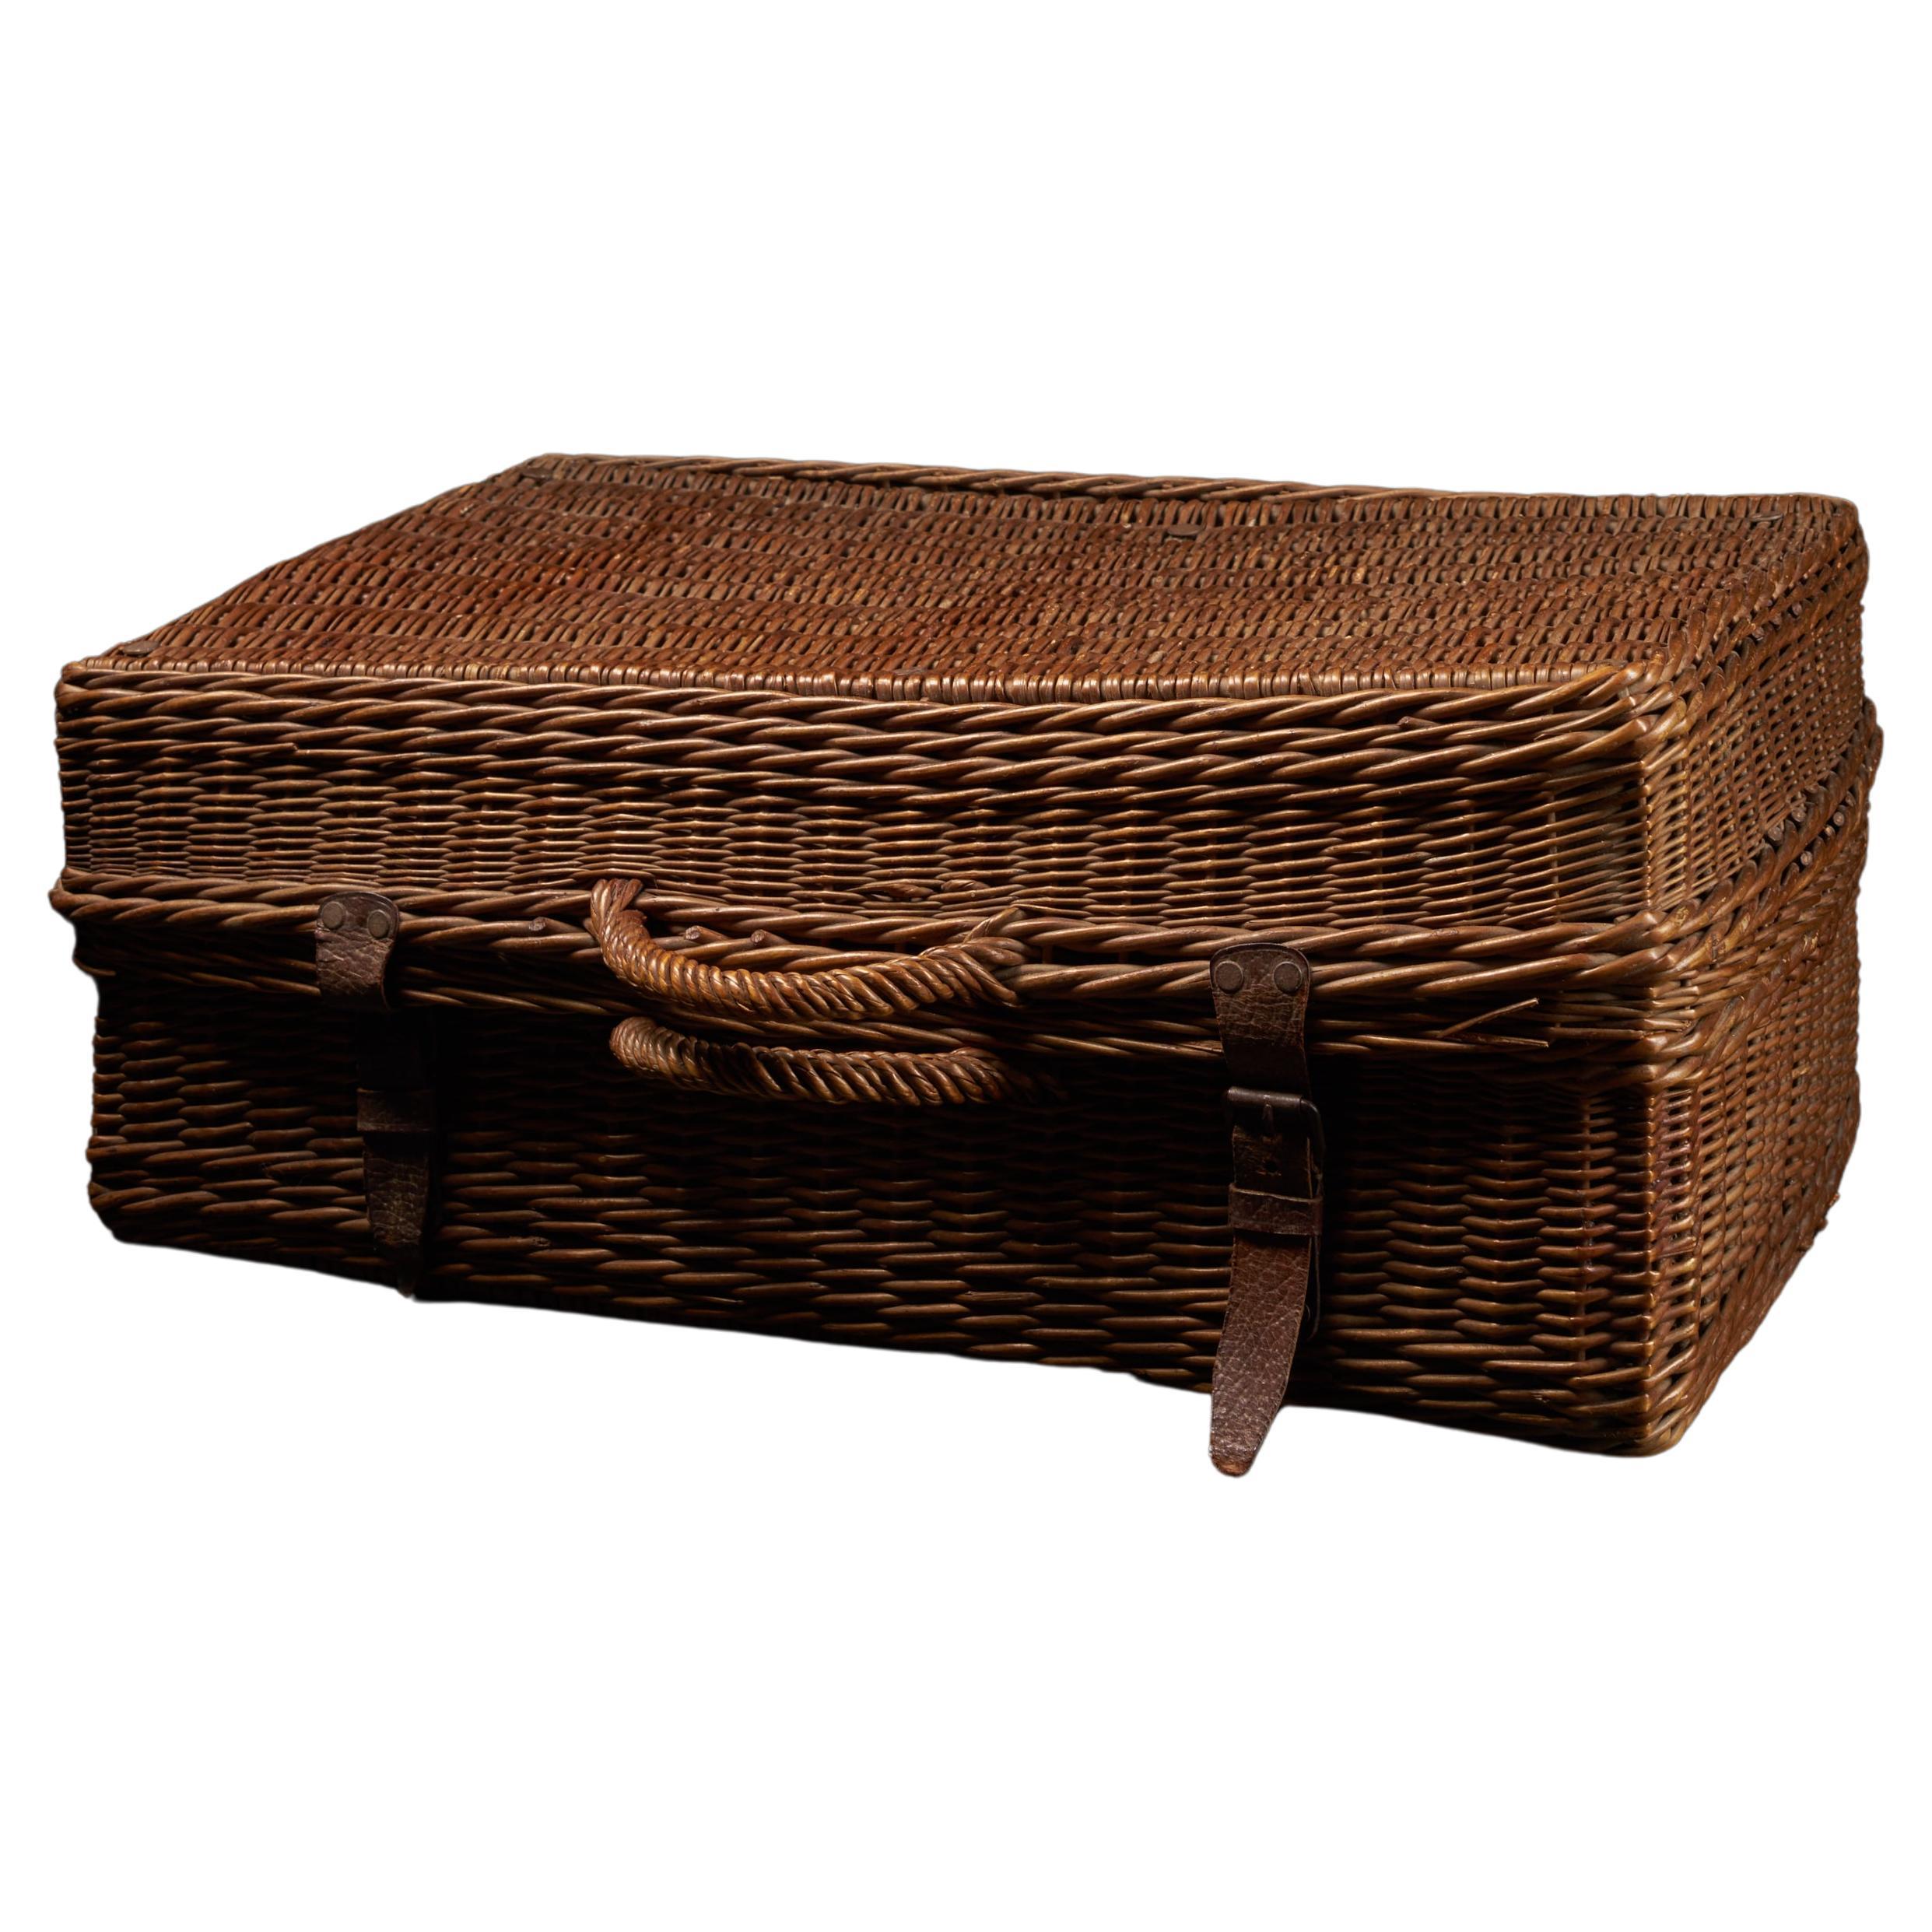 Dieser französische Picknickkorb für vier Personen wurde mit einer qualitativ hochwertigen Konstruktion und stilvollem Design für eine lange Lebensdauer hergestellt.
Einzelheiten. Wunderschön handgefertigt aus Weidengeflecht und echtem Leder
der